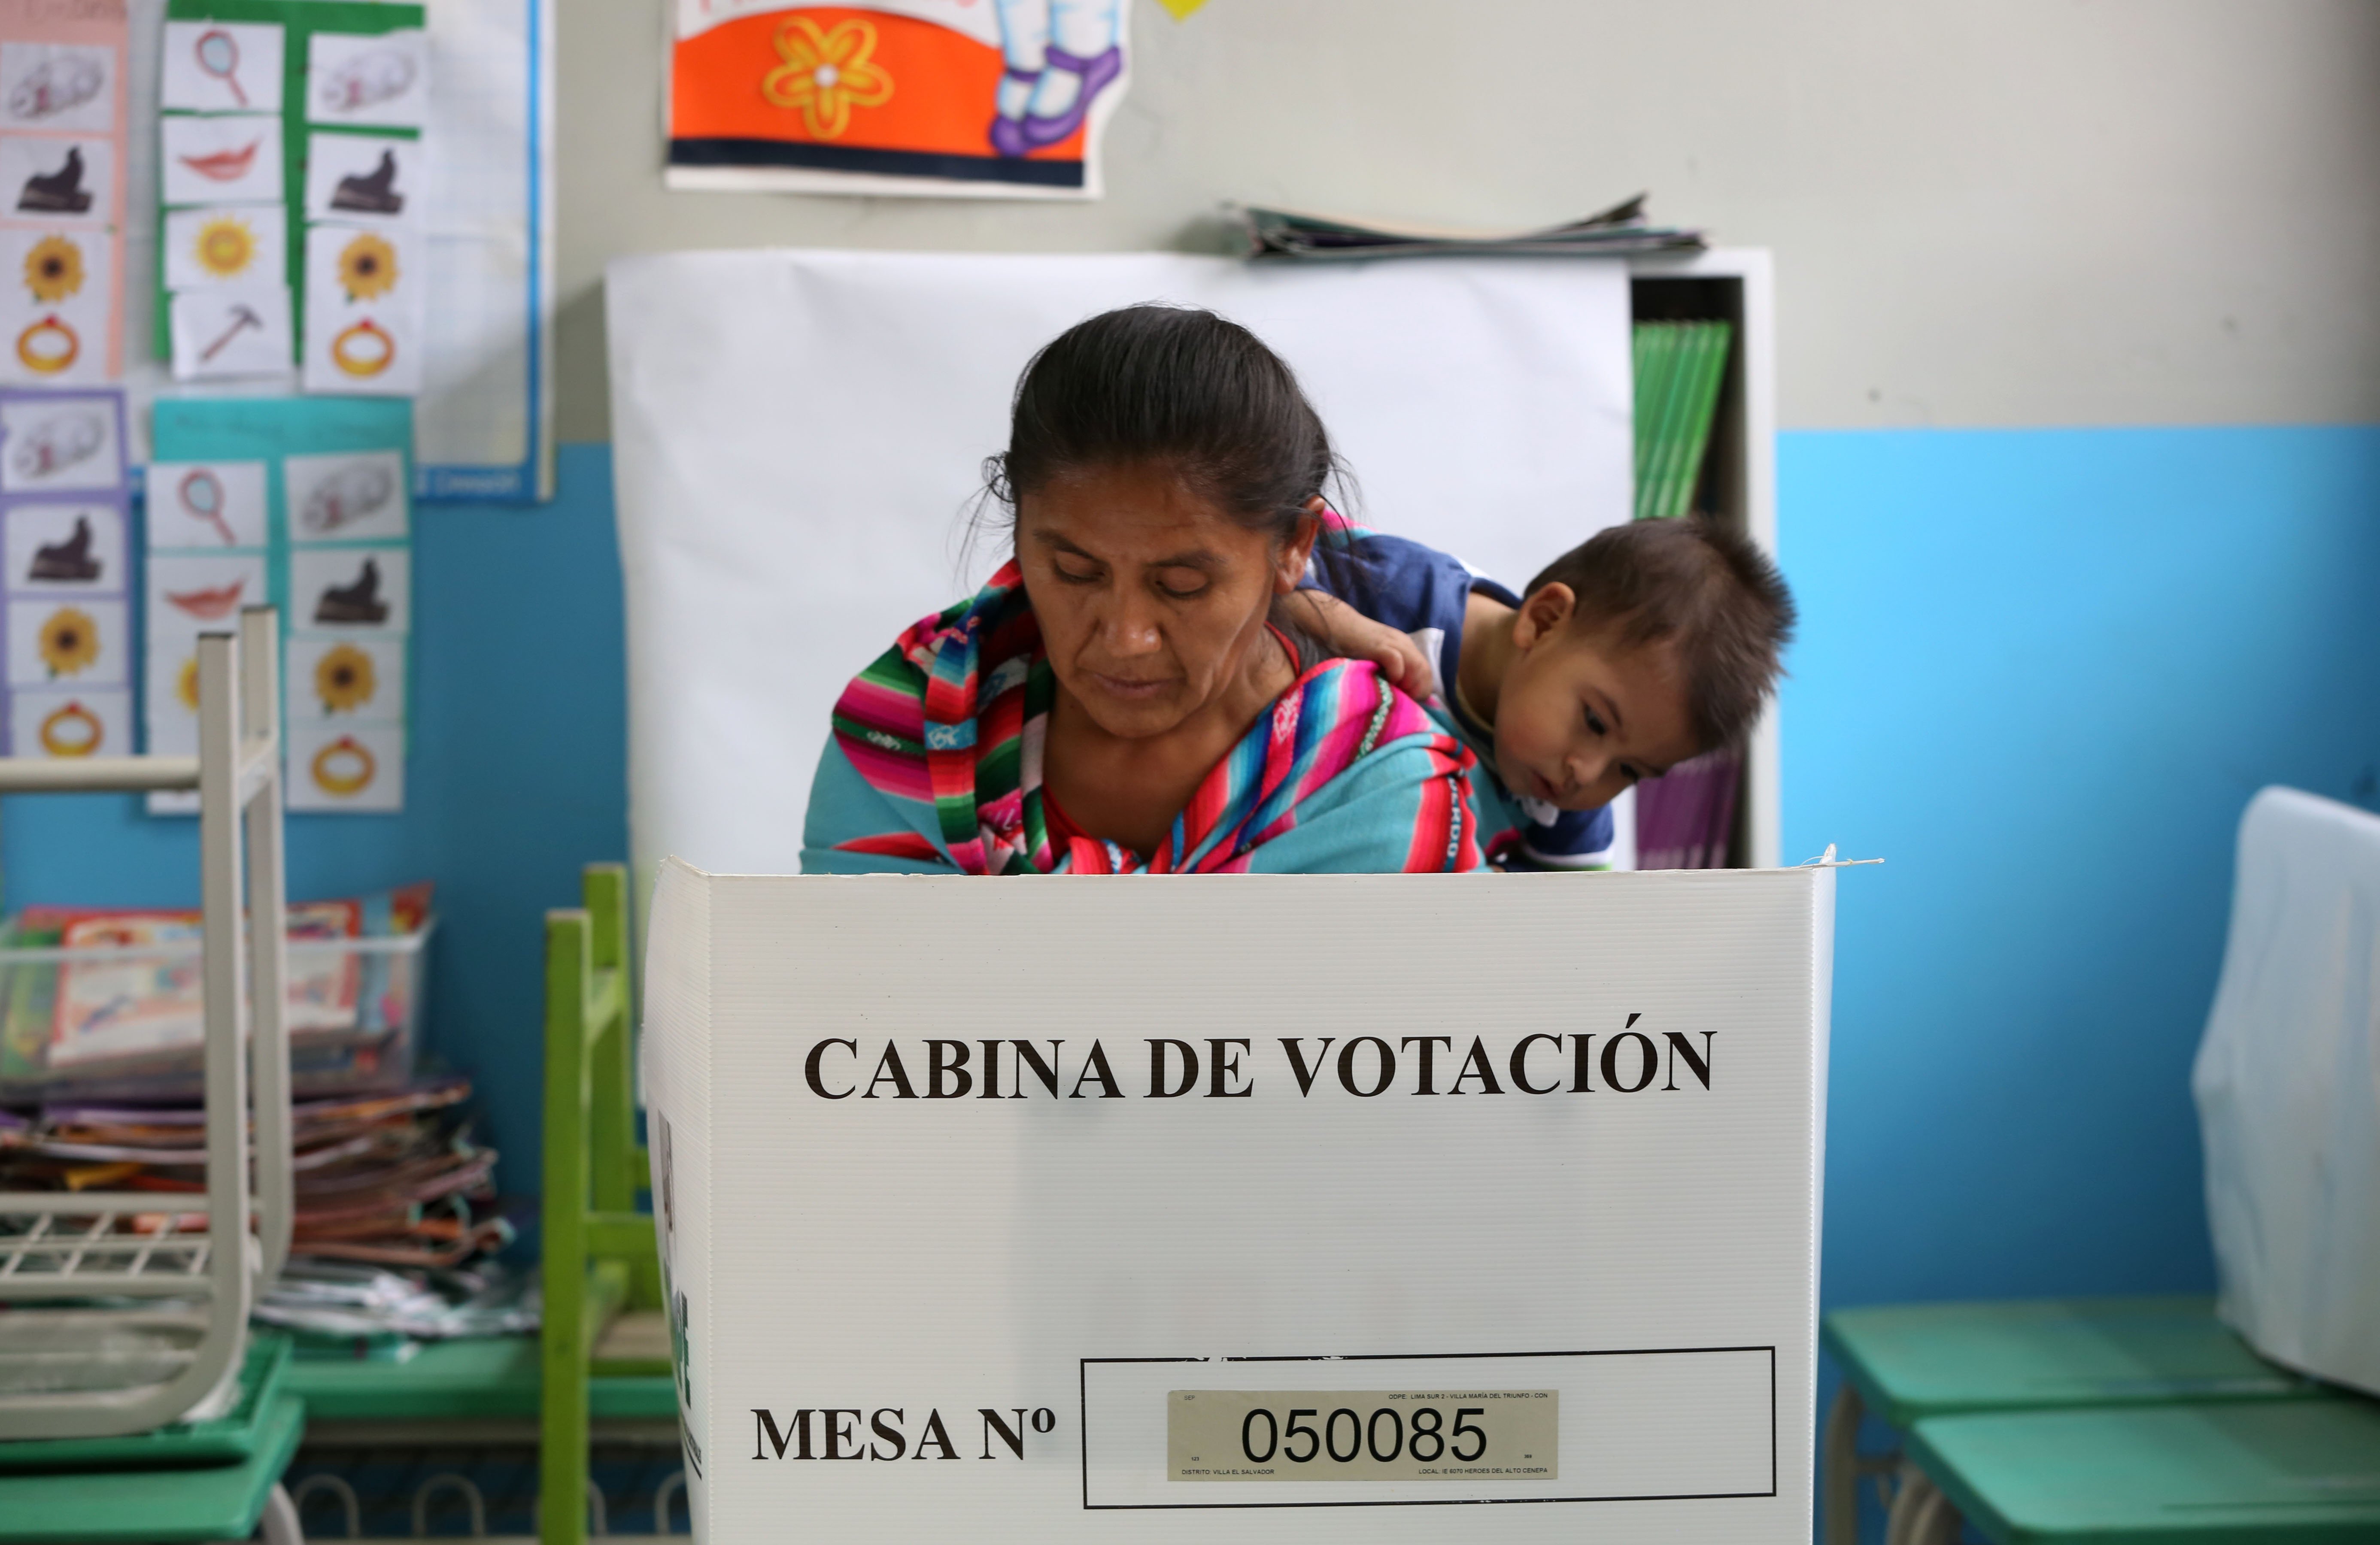 Σε θρίλερ εξελίσσεται η εκλογή του νέου προέδρου στο Περού